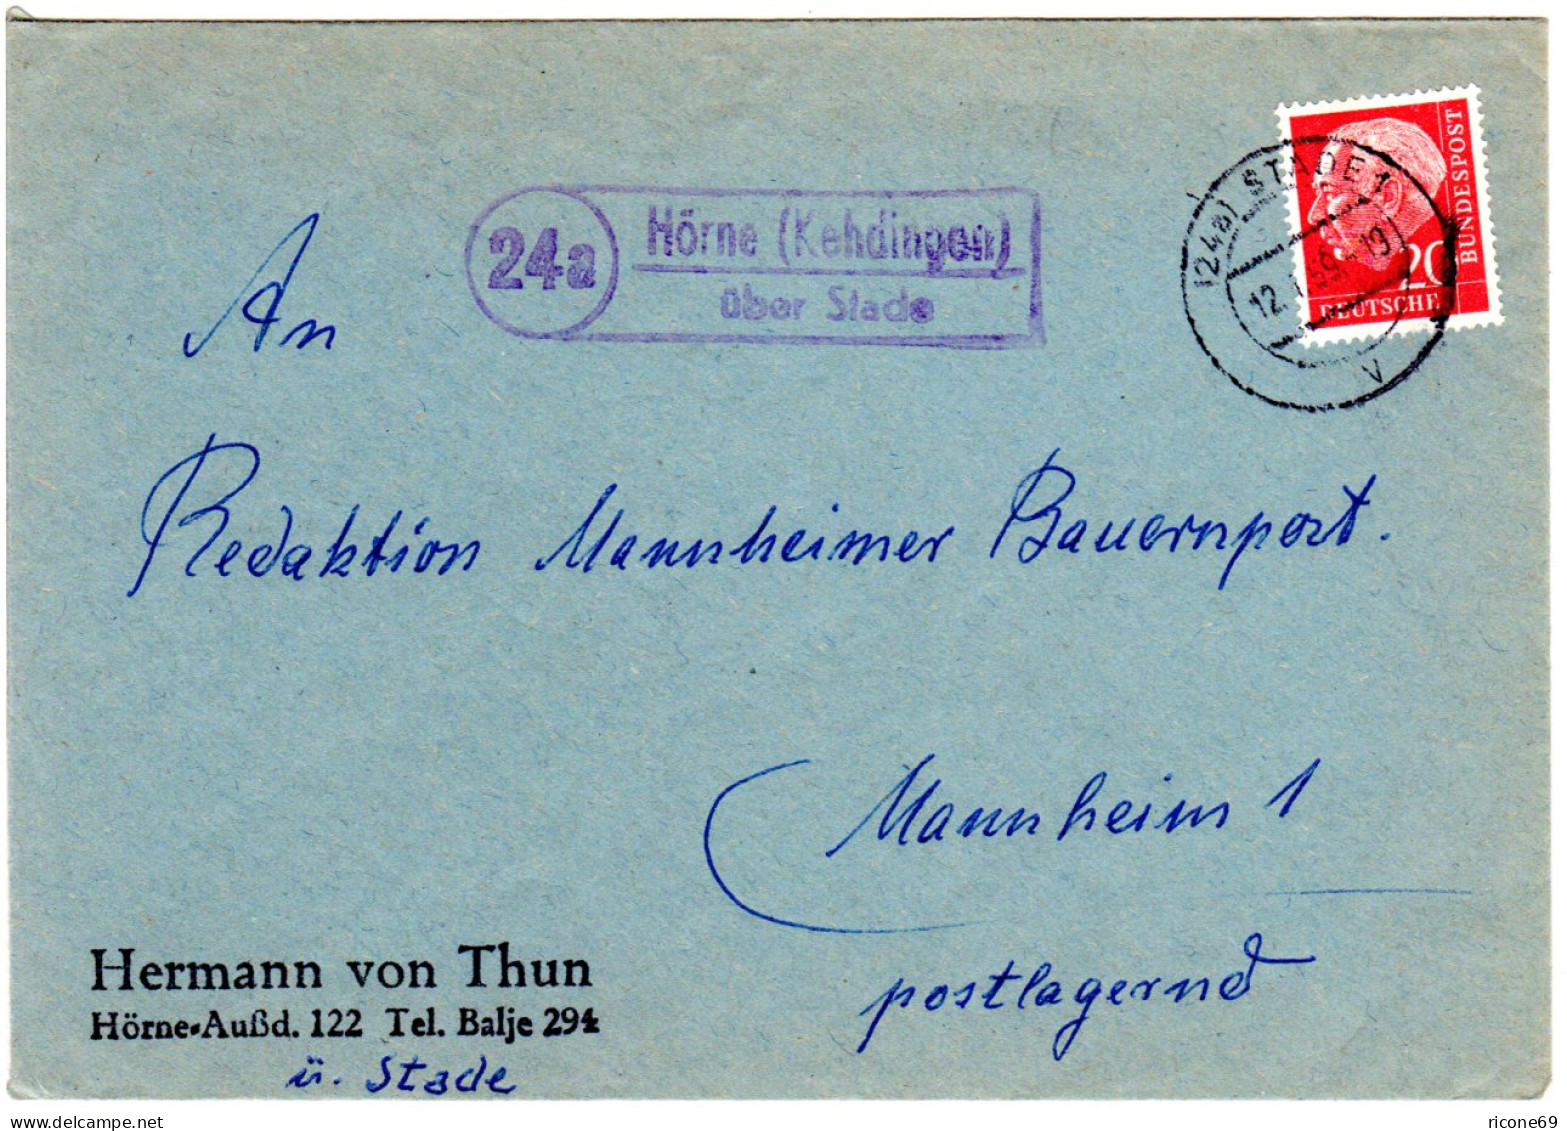 BRD 1959, Landpost Stpl. 24a HÖRNE (Kehdingen) über Stade Auf Brief M. 20 Pf. - Sammlungen